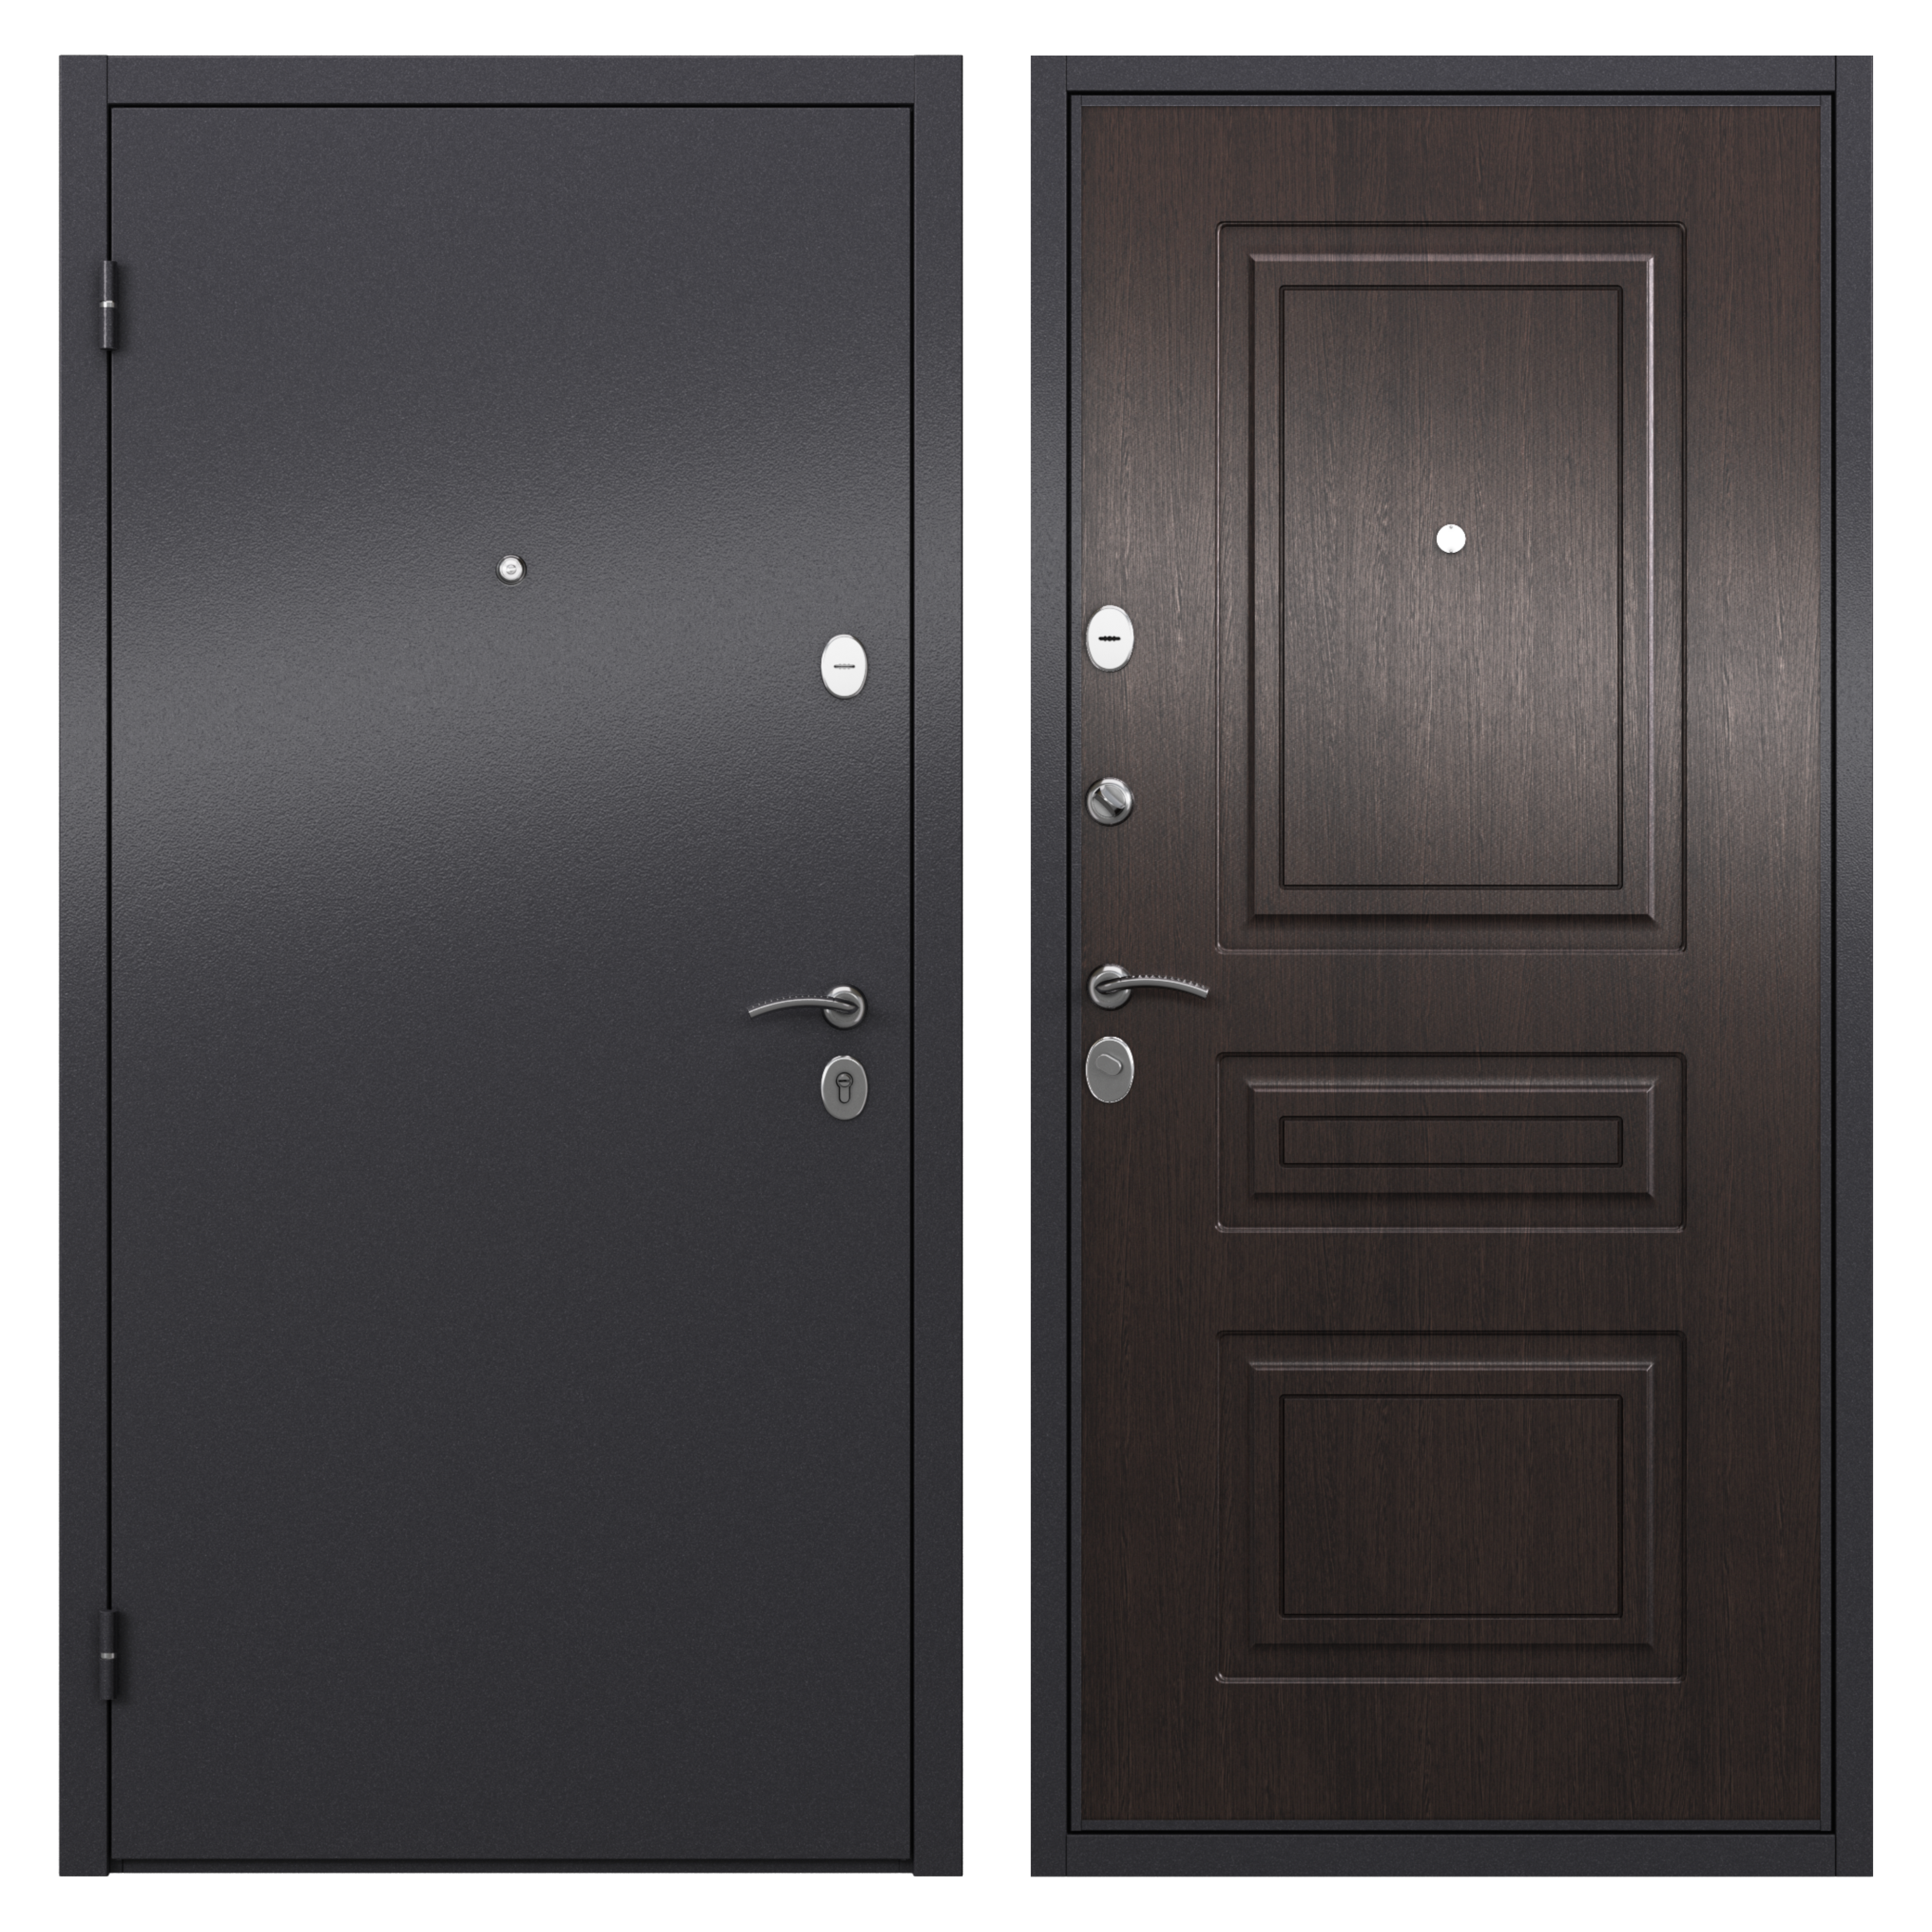 83404165 Дверь входная металлическая Берн, 860 мм, левая, цвет мара дуб STLM-0040884 TOREX